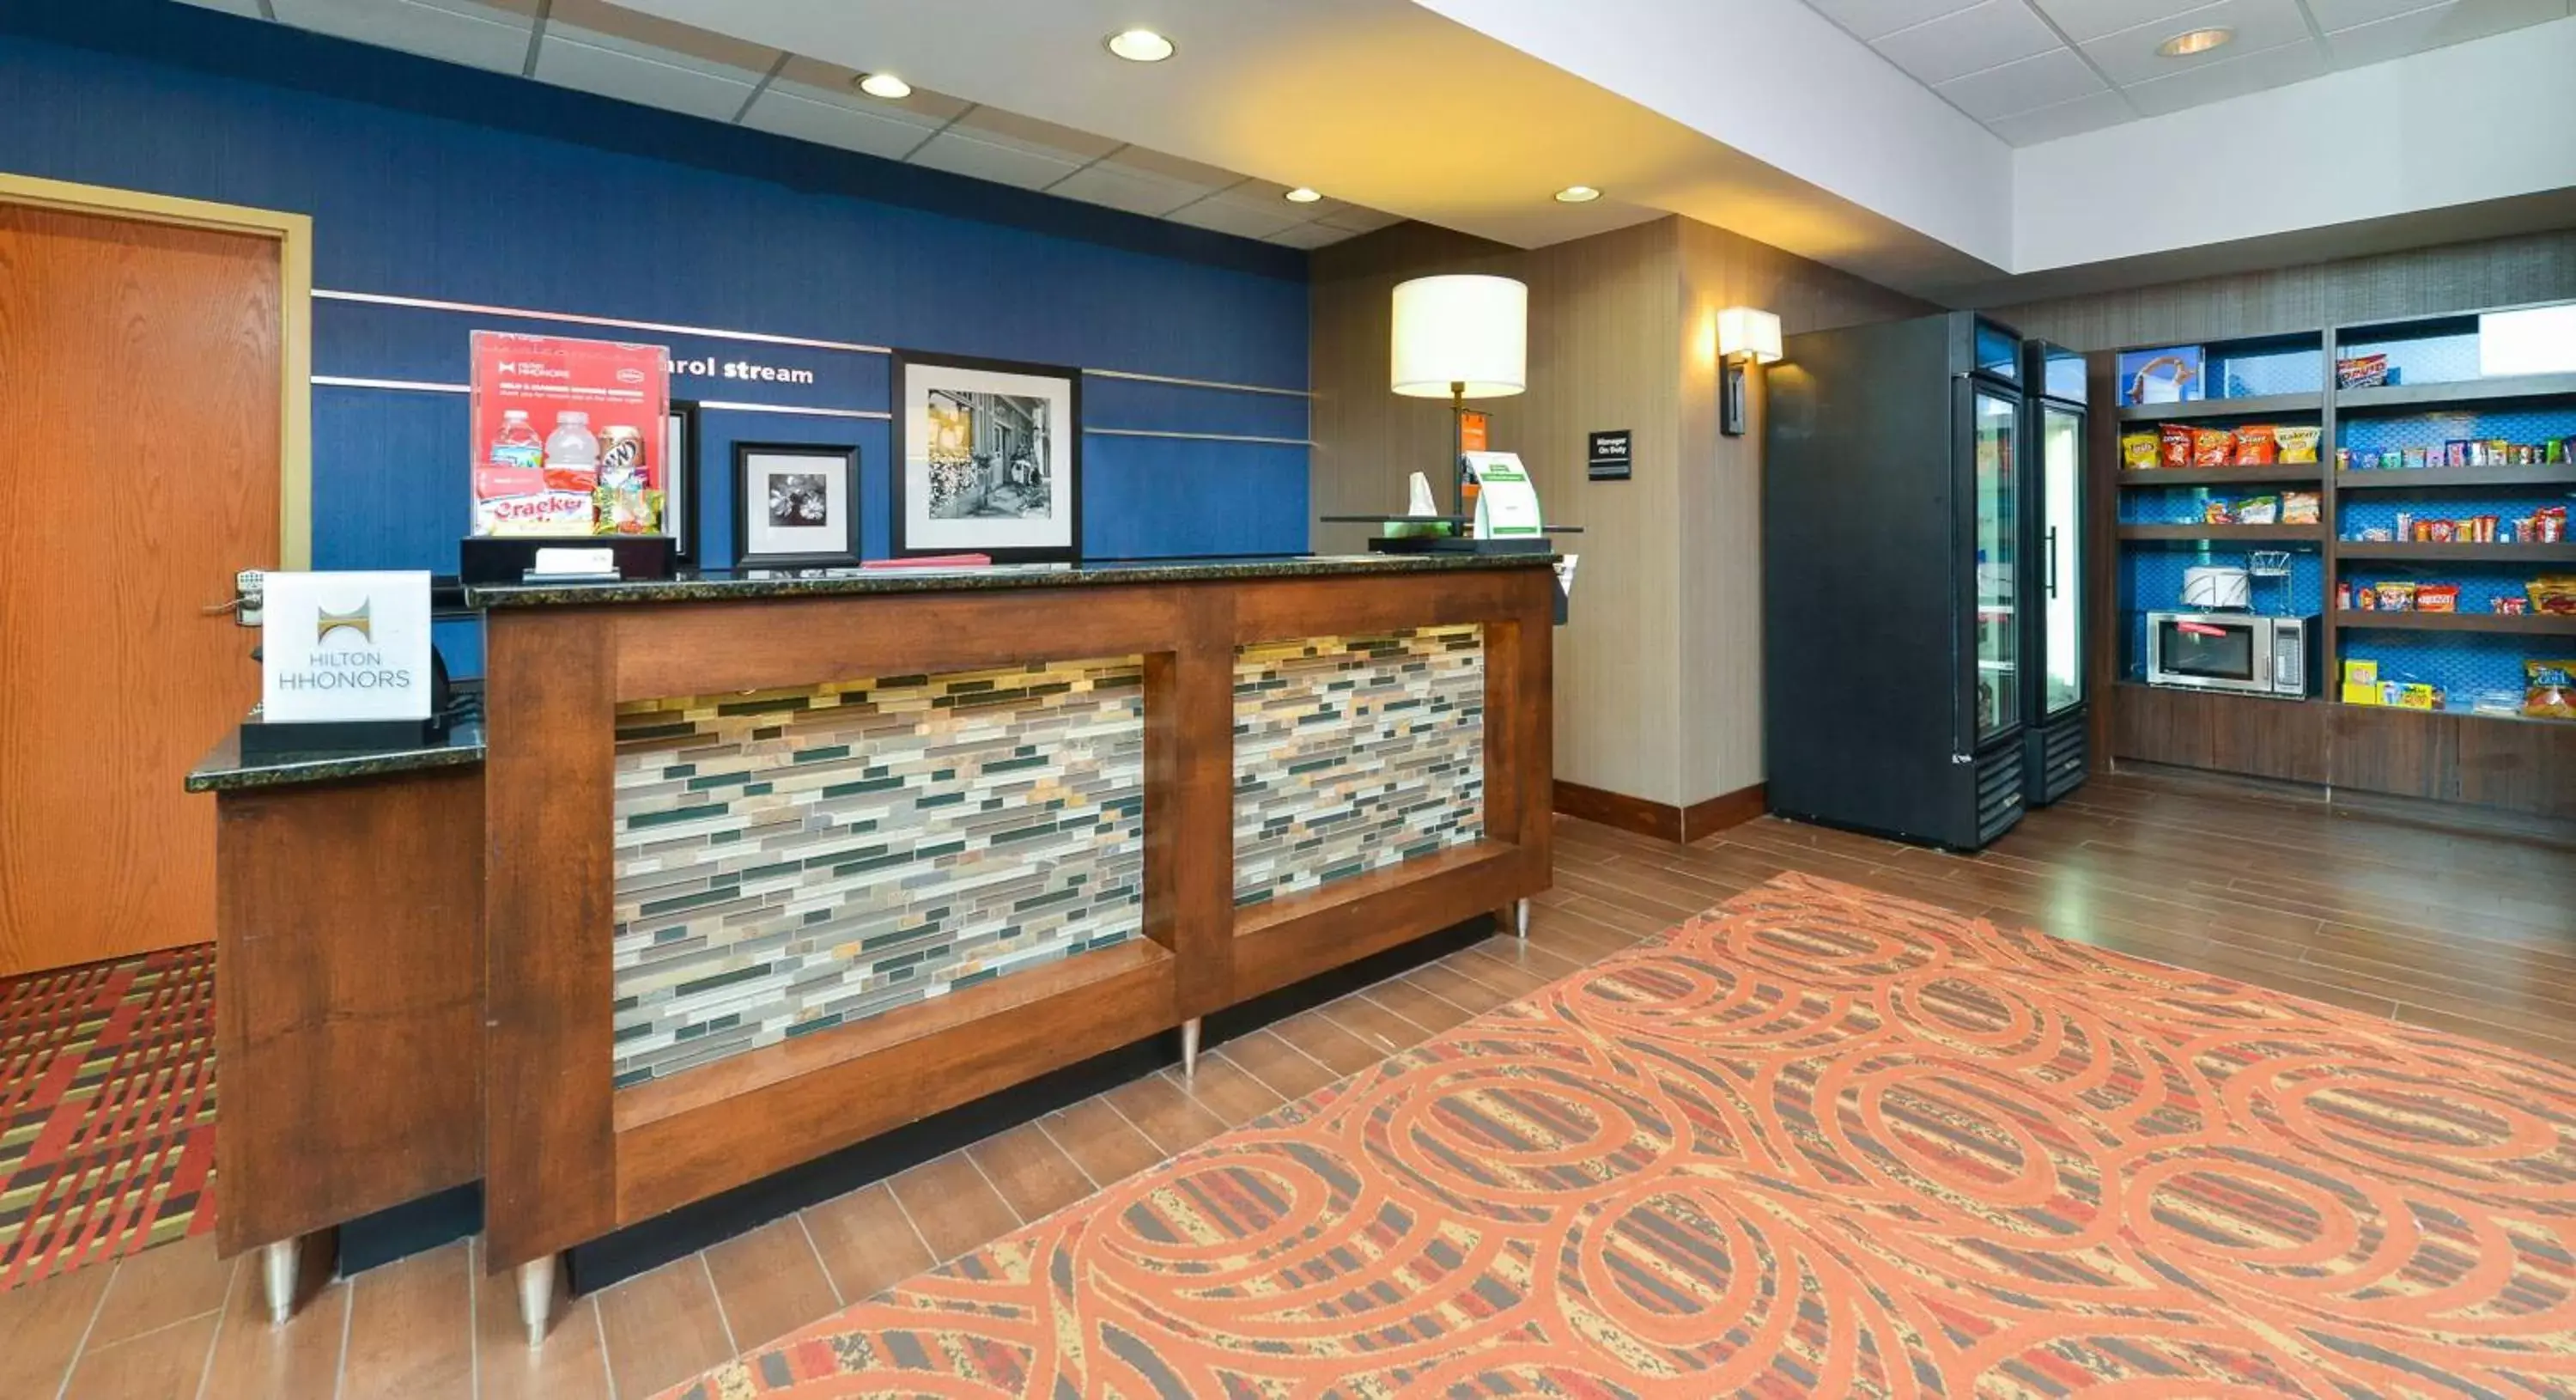 Lobby or reception, Lobby/Reception in Hampton Inn Chicago-Carol Stream